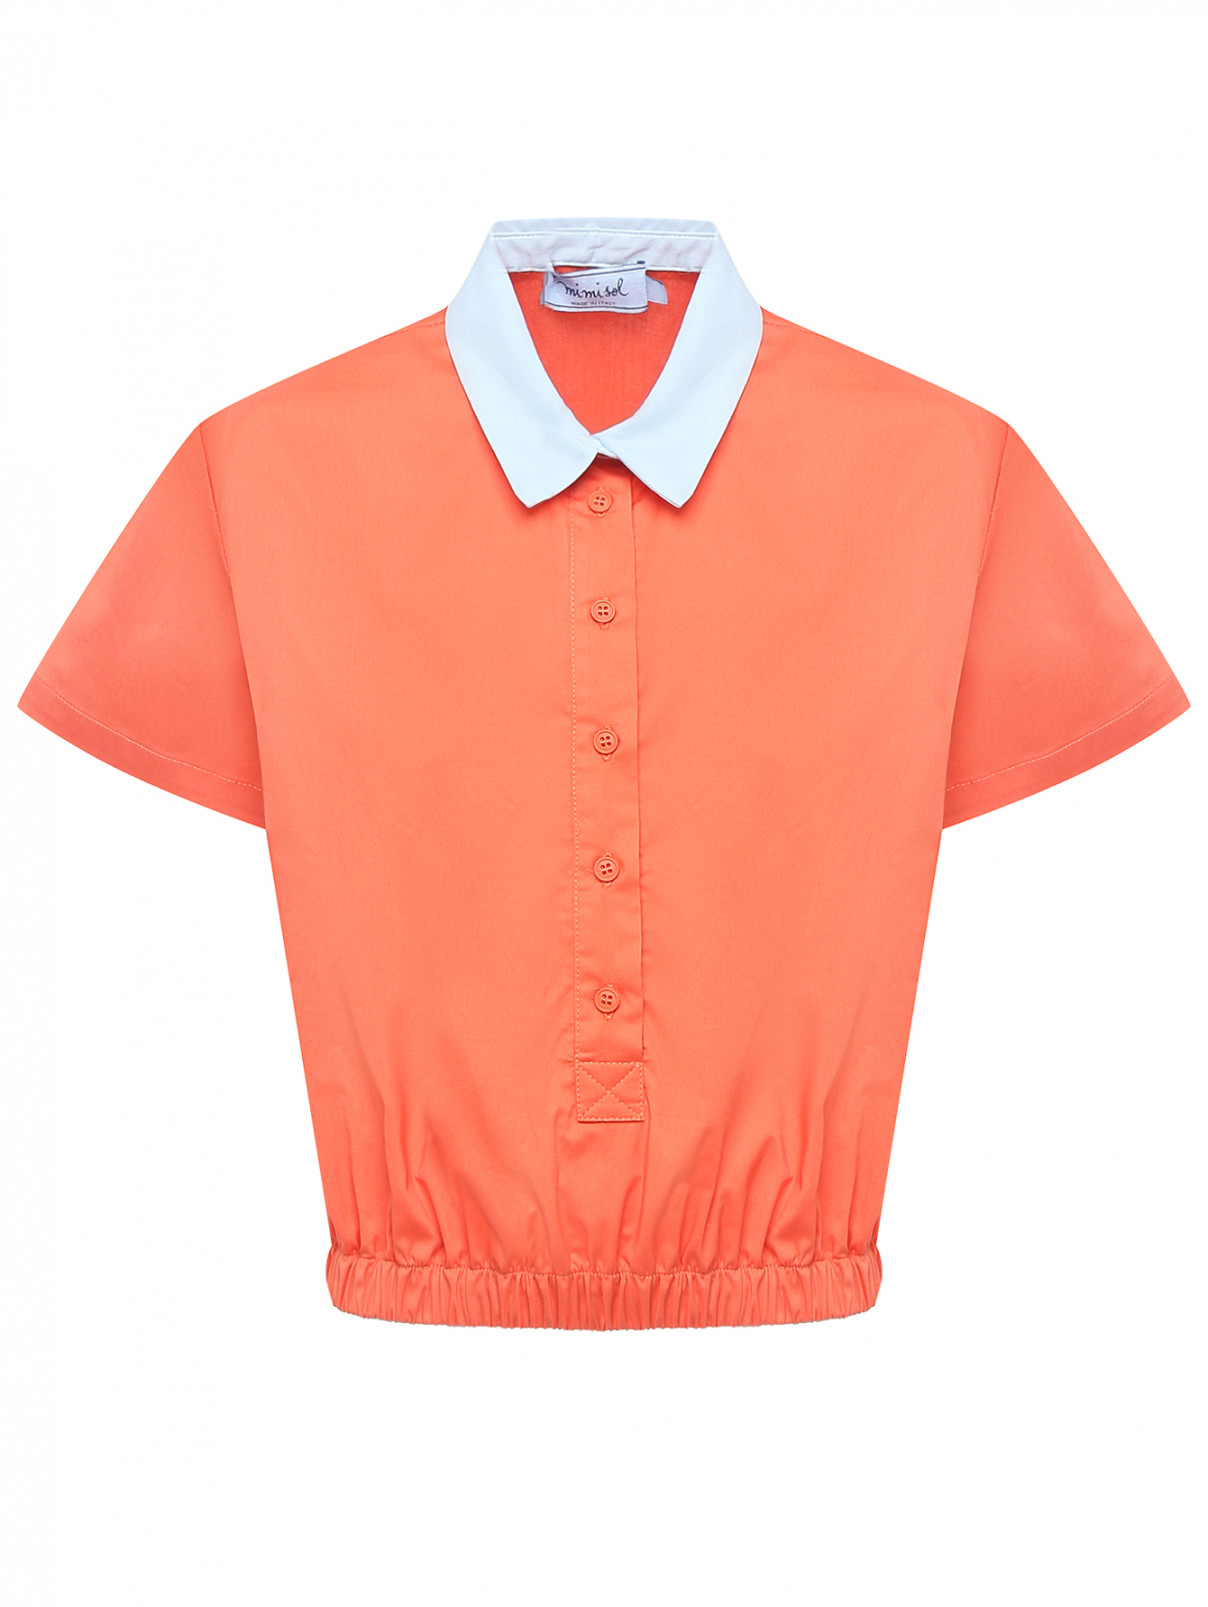 Хлопковая блуза с коротким рукавом MiMiSol  –  Общий вид  – Цвет:  Оранжевый